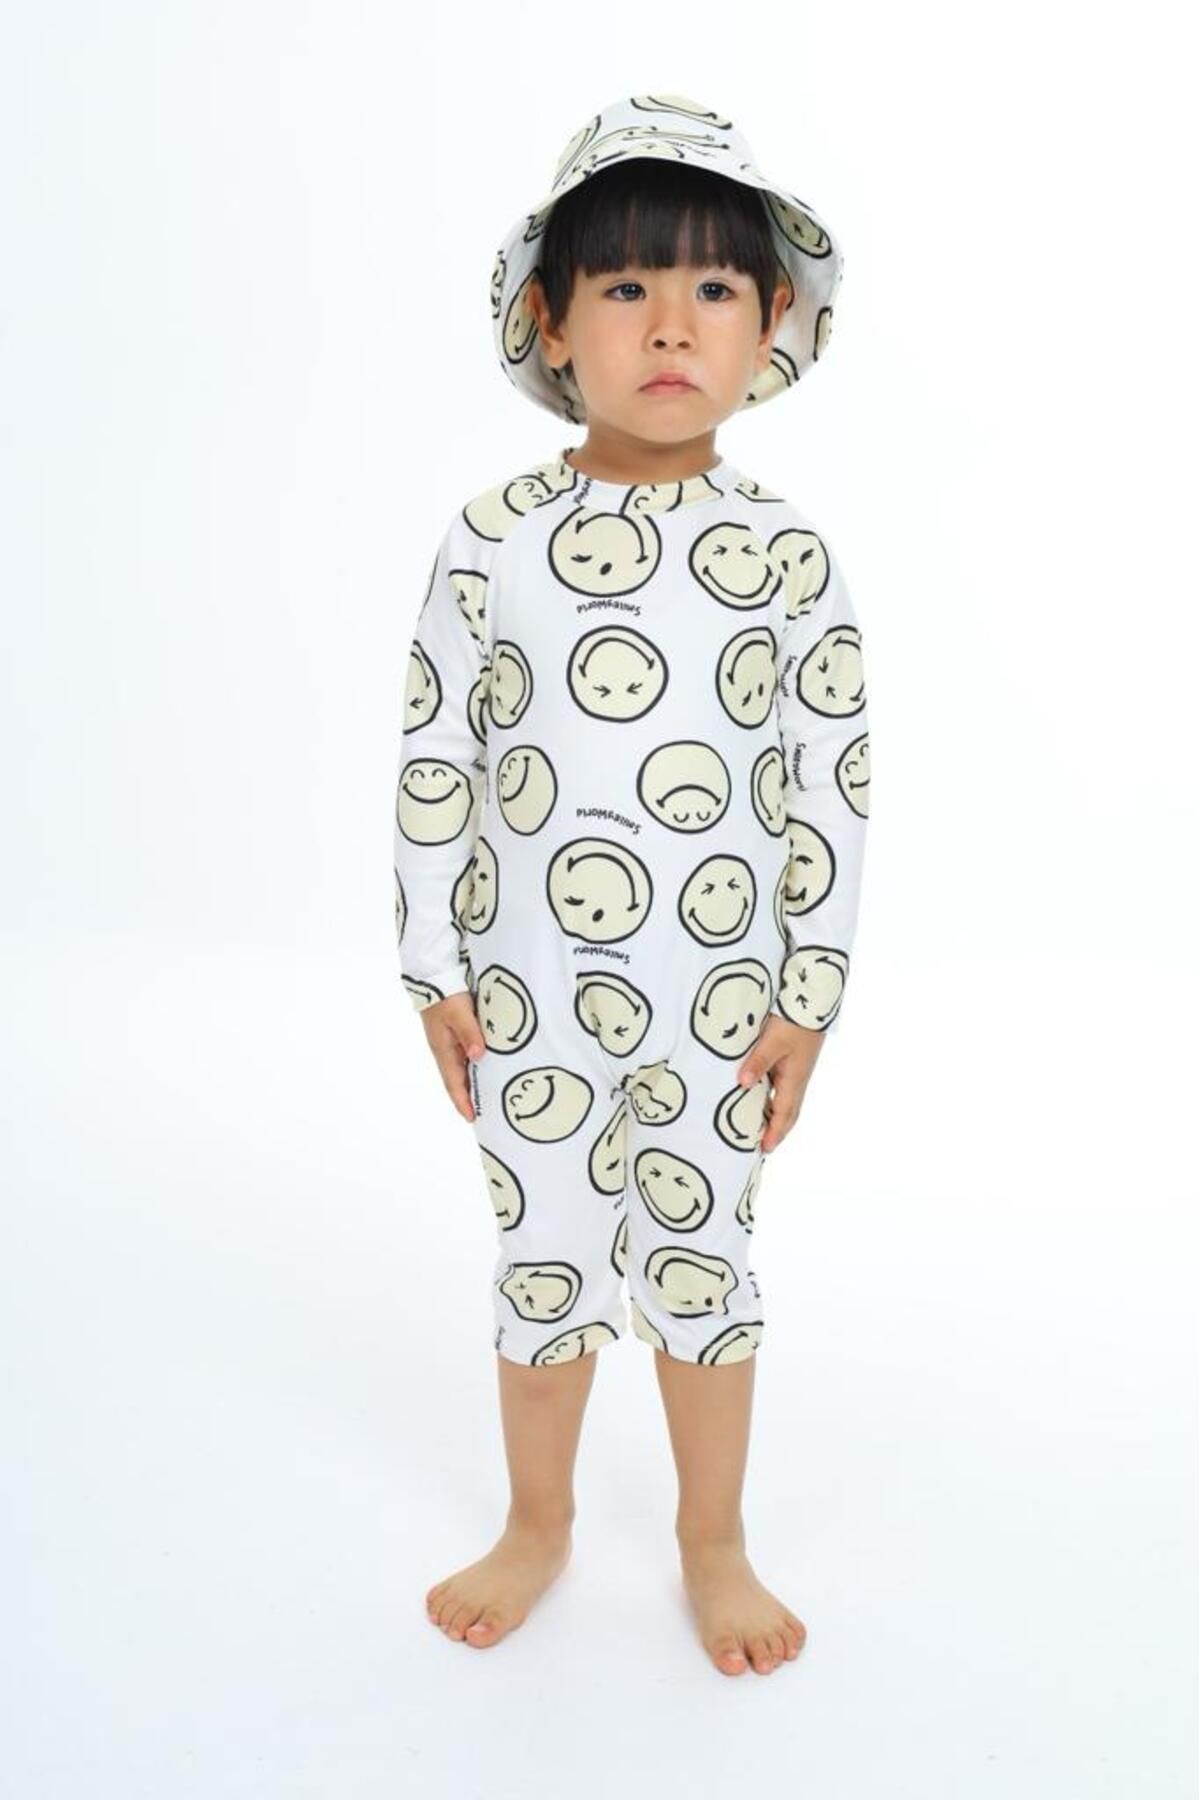 Lolliboomkids Unisex Bebek - Çocuk Mayo Tam Vücut Güneş Koruma Hassas Ten Emoji Smile Desen Mayo Şapka Hediyeli